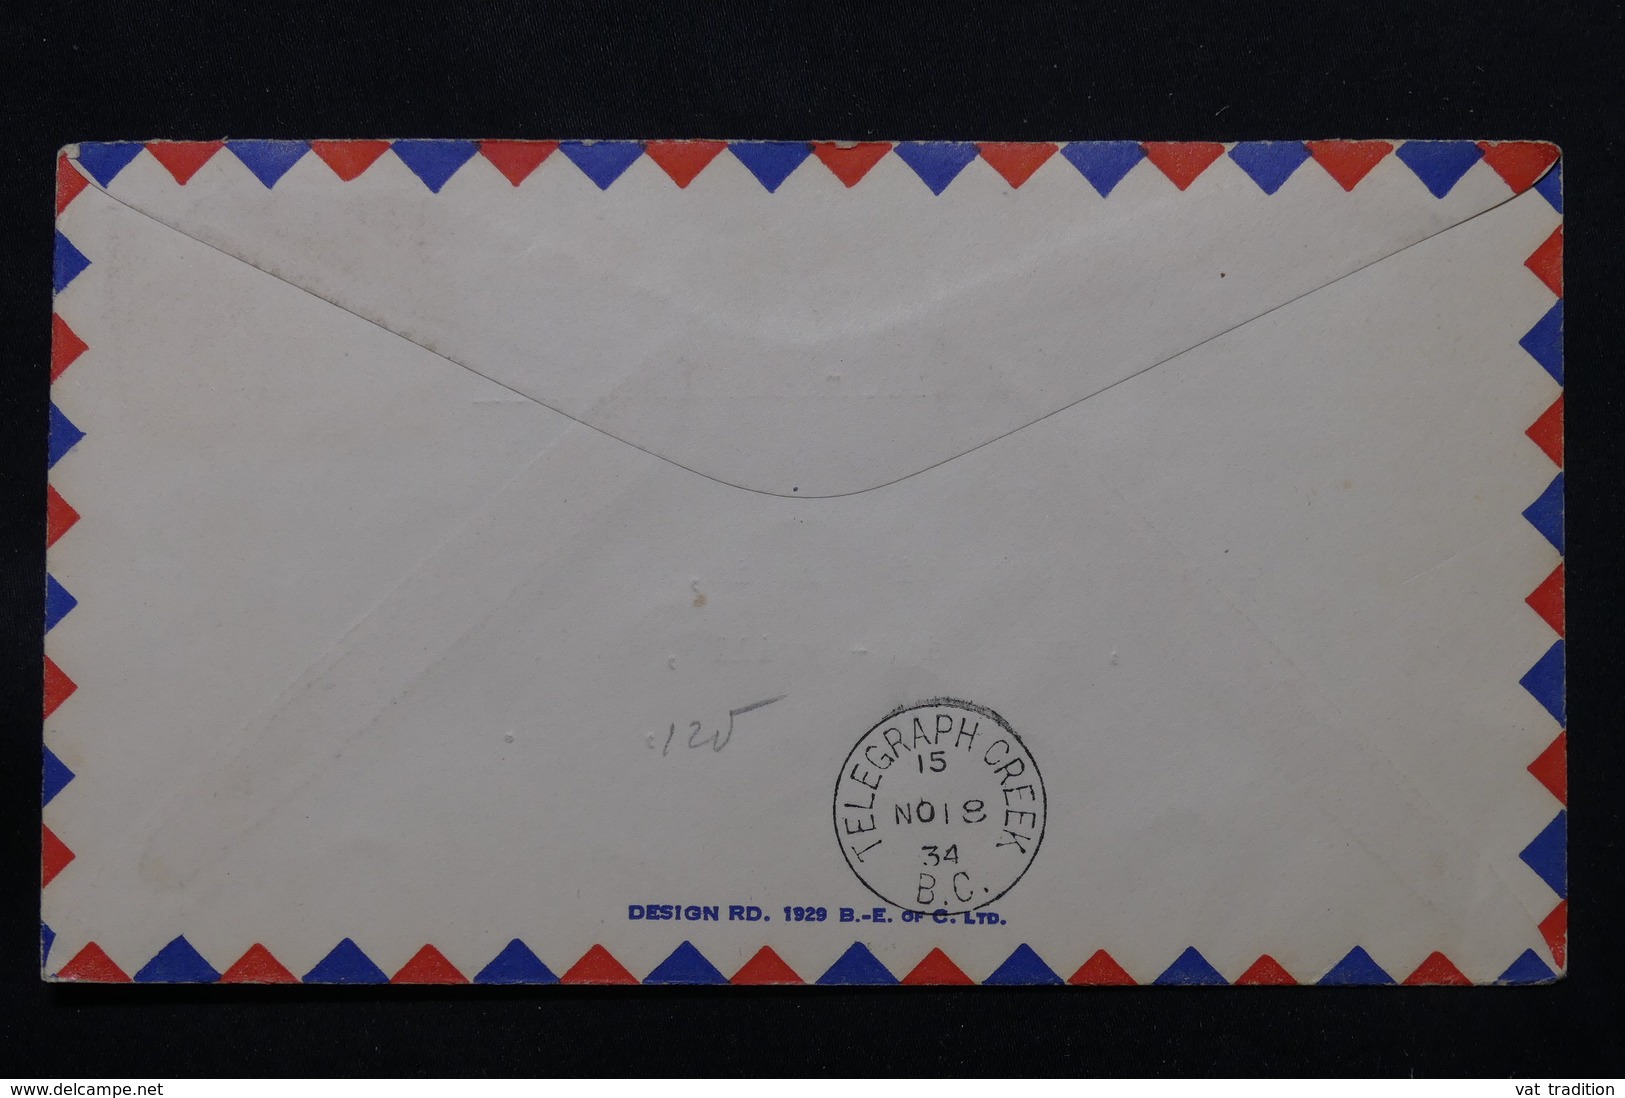 CANADA - Enveloppe Par 1er Vol Atlin / Télégraph Creek En 1934, Affranchissement Et Cachets Plaisants - L 58383 - First Flight Covers